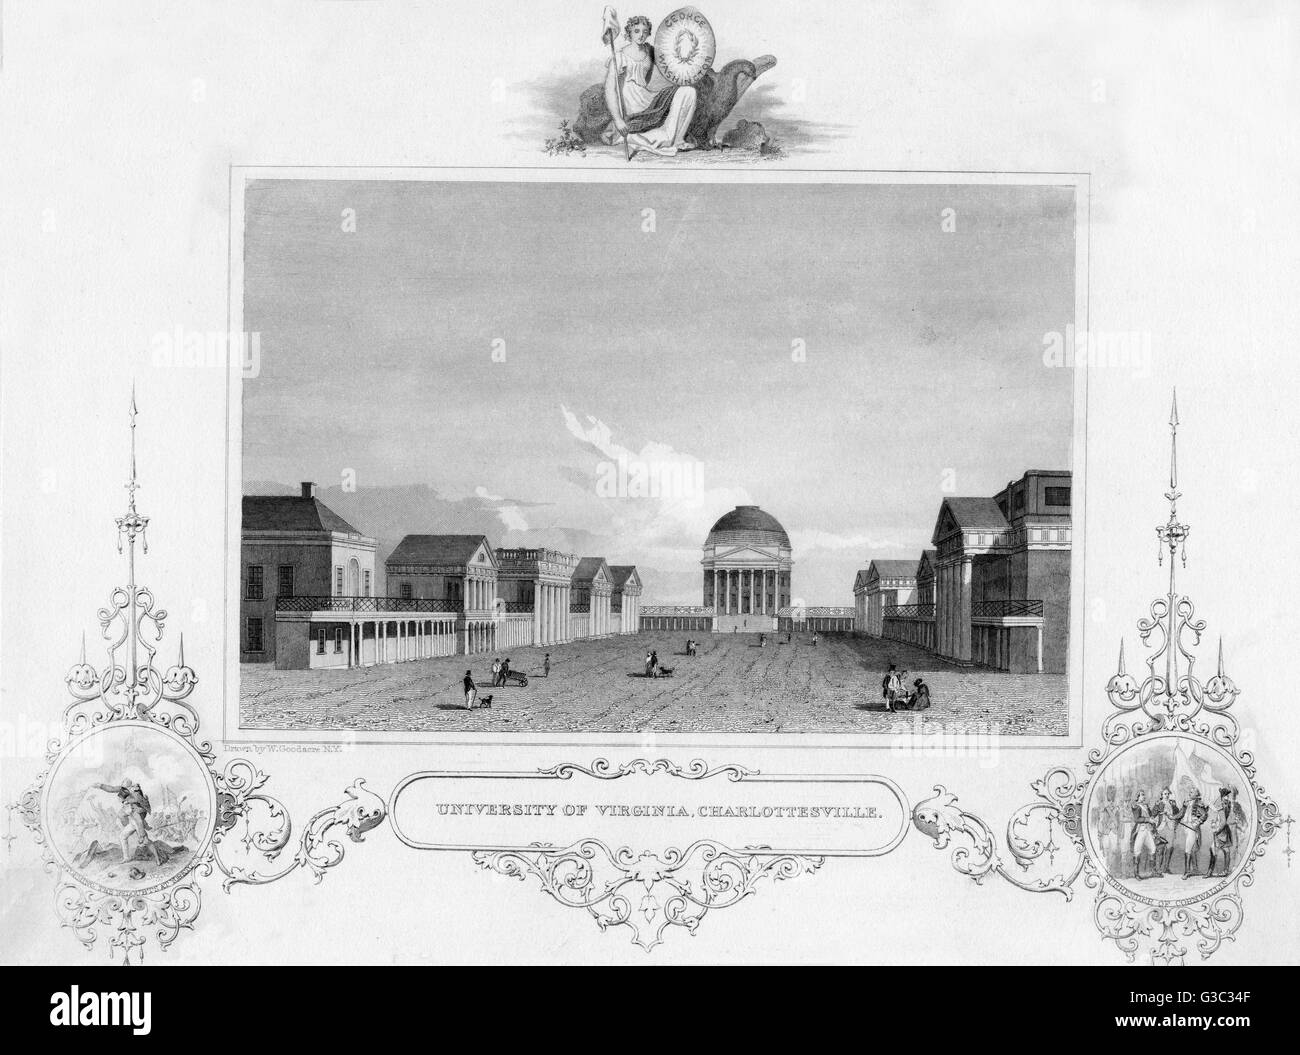 El Césped (parte de Thomas Jefferson de la aldea académica) en la Universidad de Virginia, una obra maestra de la arquitectura palladiana, con la Rotunda como punto focal en el extremo norte del sitio. Grabado en el recuadro de la izquierda ilustra el asalto del Foto de stock